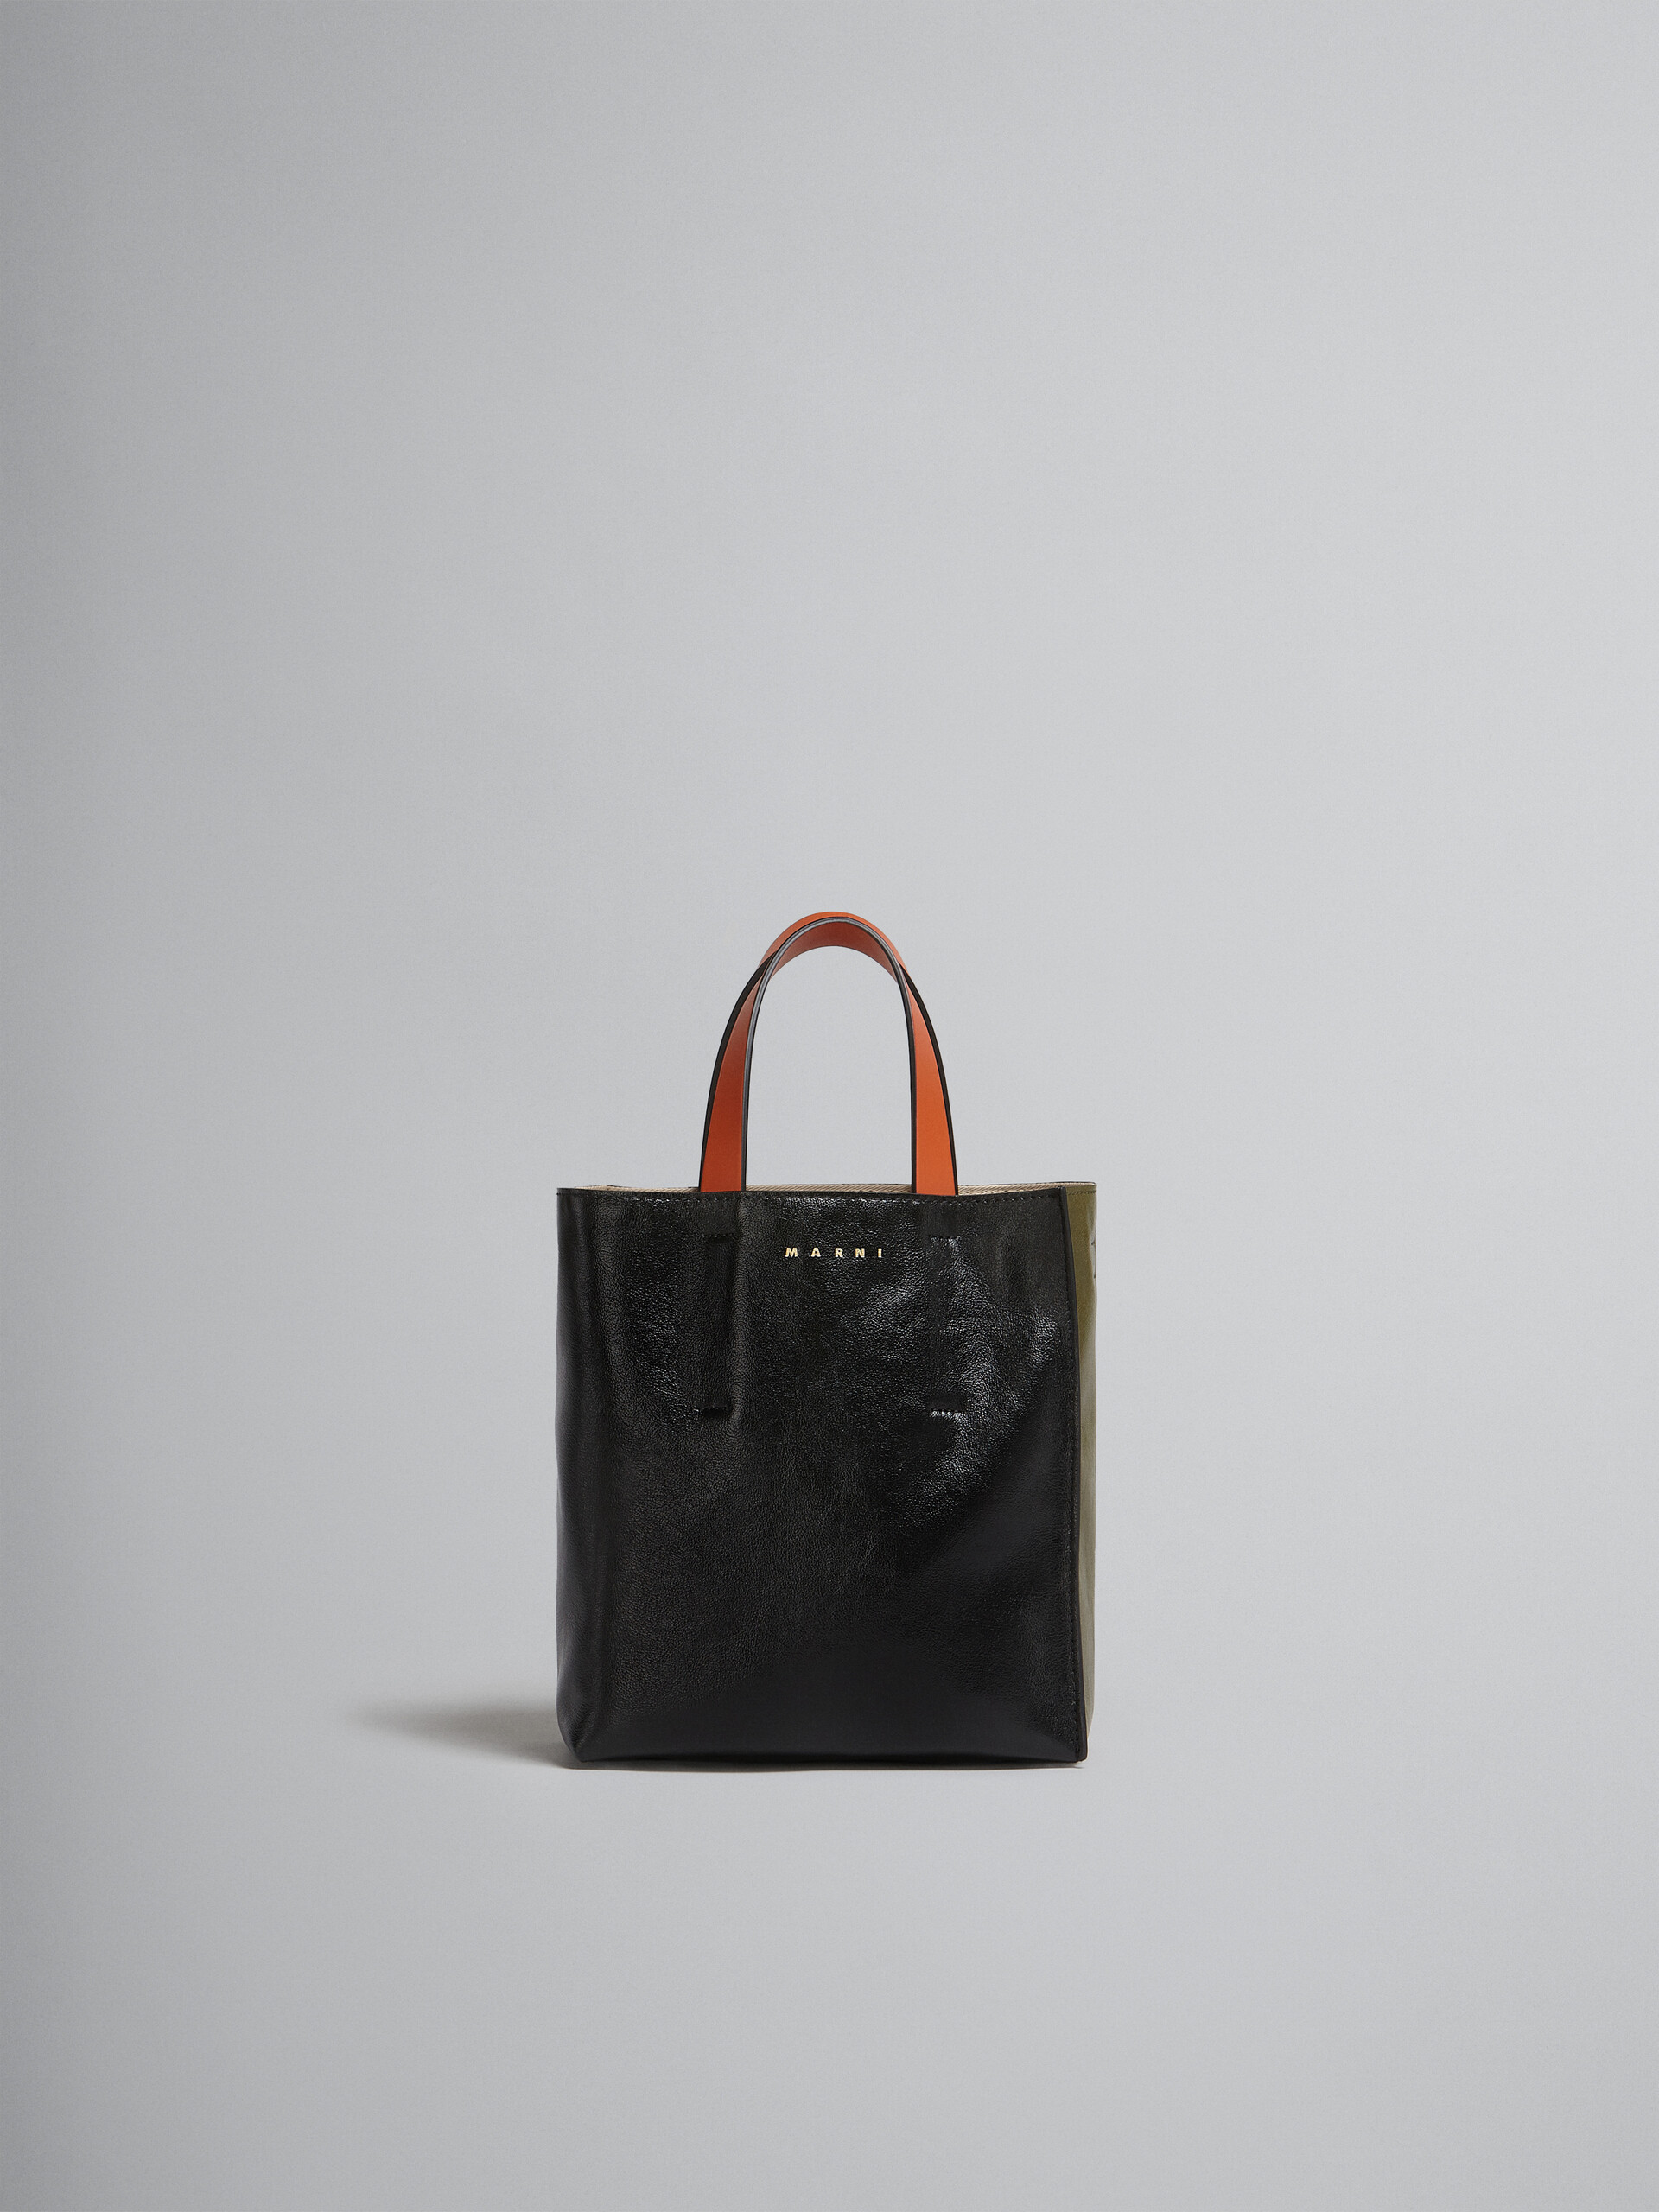 Mini-sac Museo Soft en cuir gris, noir et rouge - Sacs cabas - Image 1